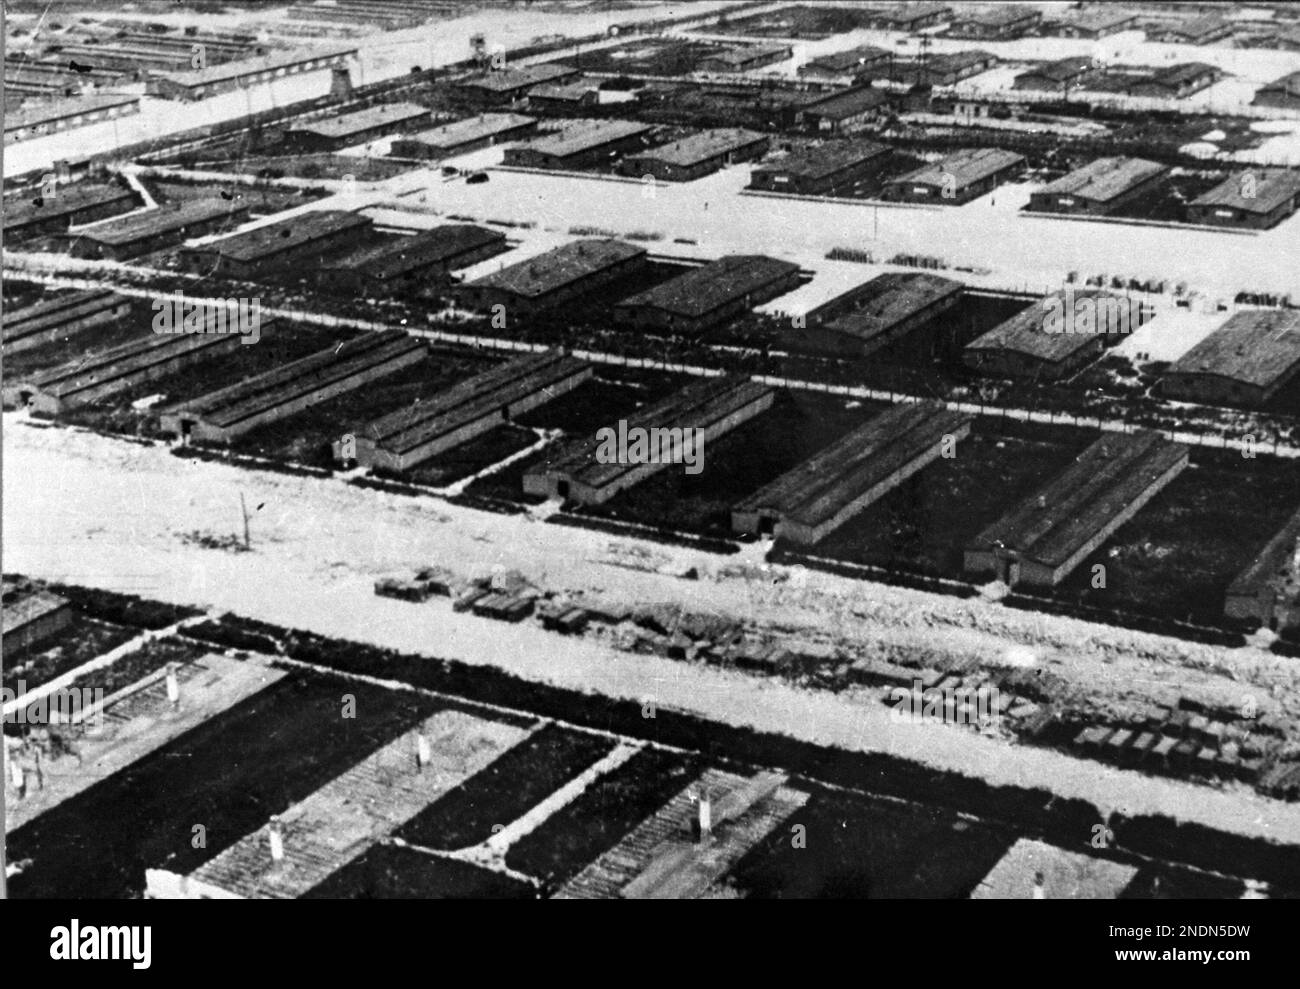 Das Konzentrationslager Majdanek, das von den SS-Totenkopfverbänden betrieben wurde, war auch der Standort des Rüstungsunternehmens Deutsche Ausrüstungswerke (DAW), dessen Eigentümer und Betreiber die Schutzstaffel (SS) war. Stockfoto